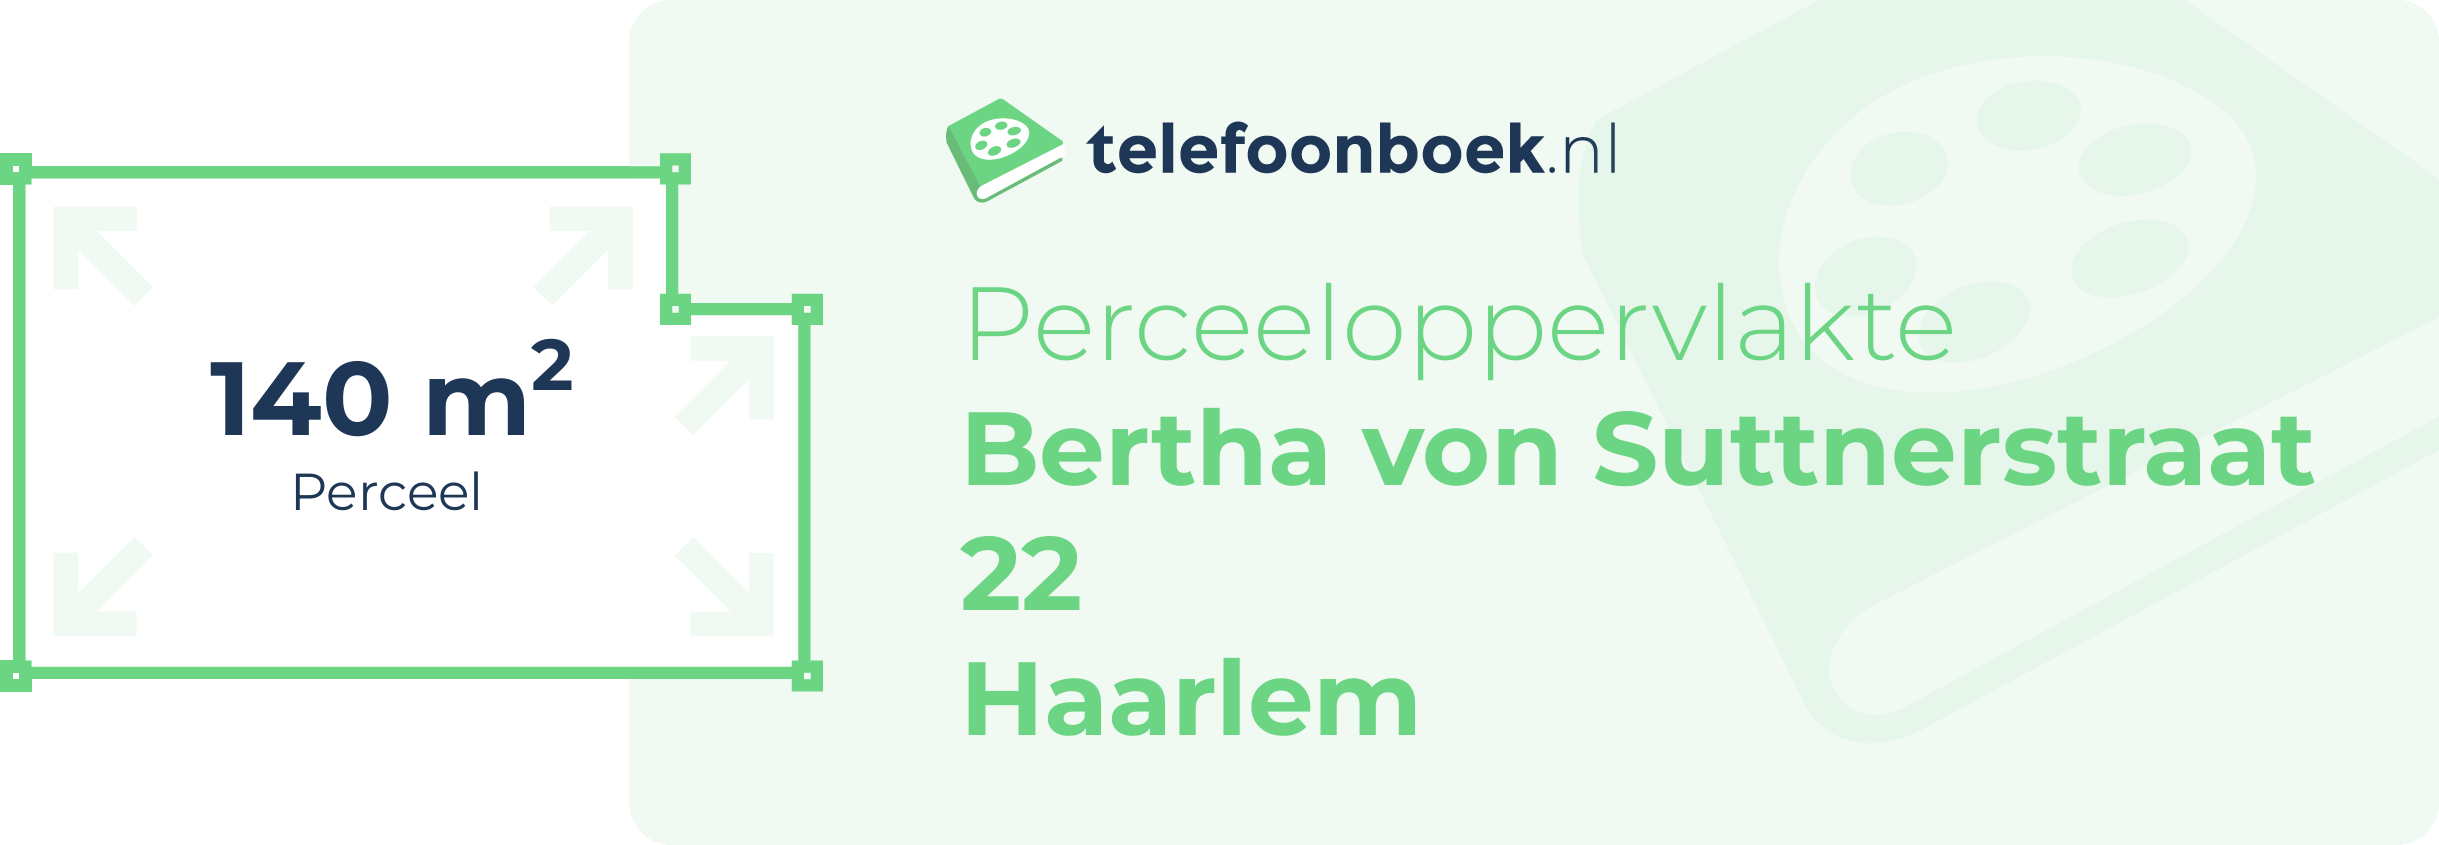 Perceeloppervlakte Bertha Von Suttnerstraat 22 Haarlem